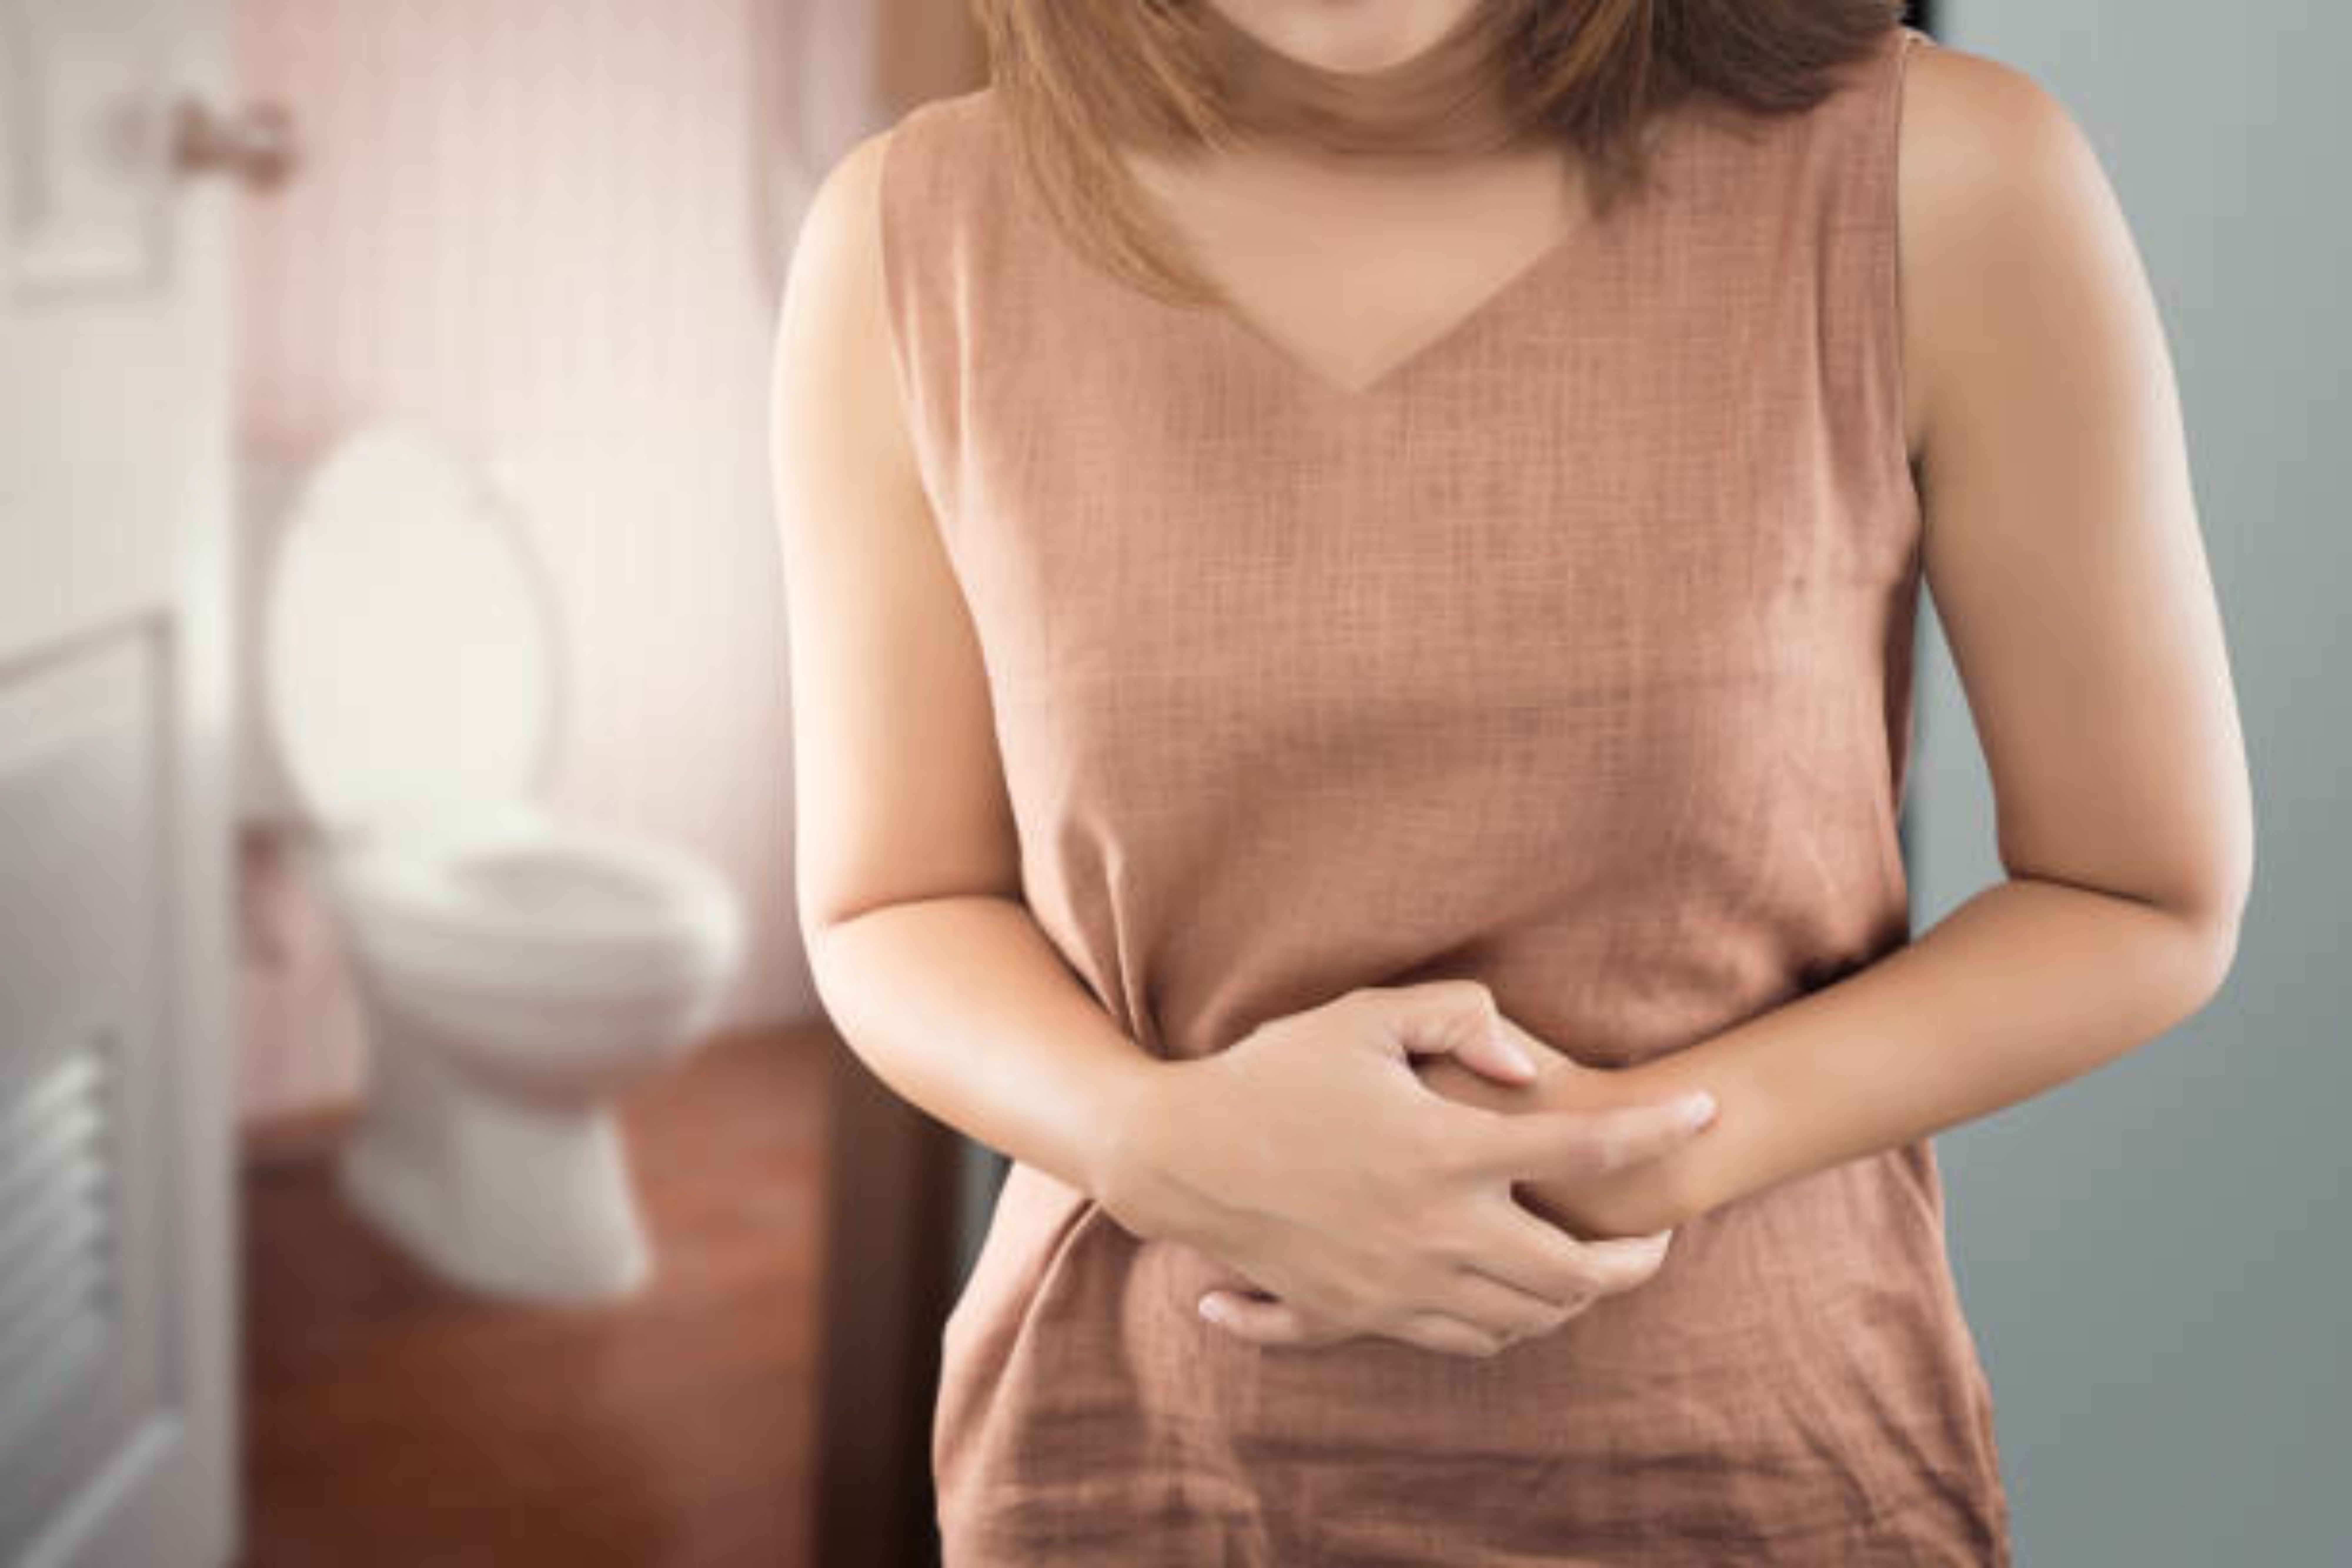 Causas del dolor abdominal leve en el embarazo joven